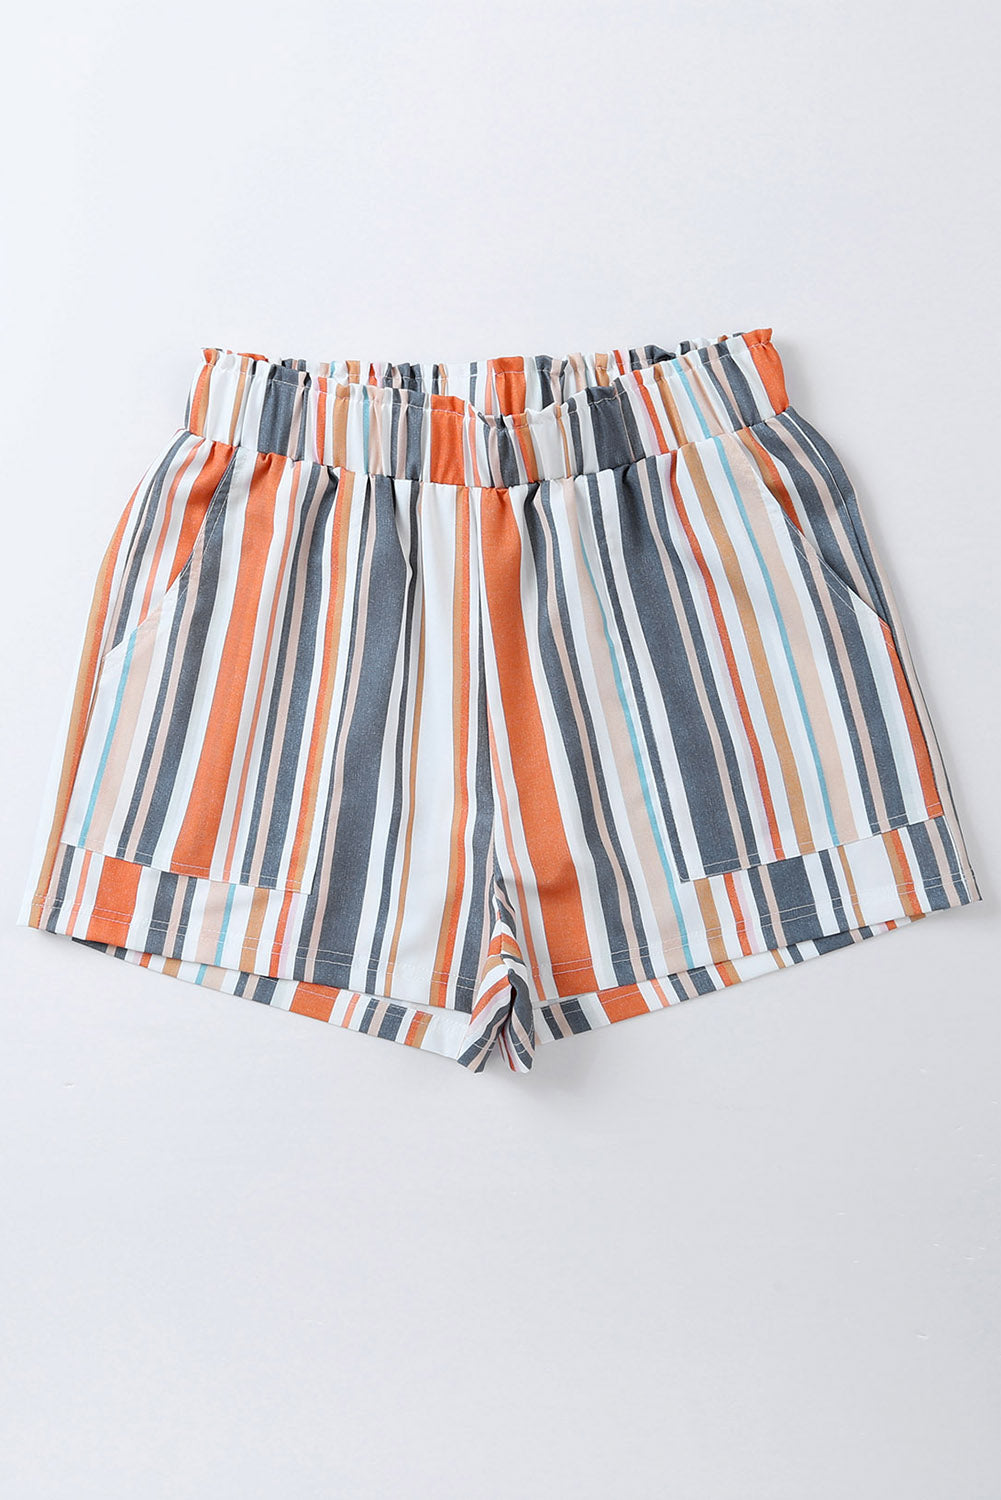 Stripe Vintage Washed Elastic Waist Shorts